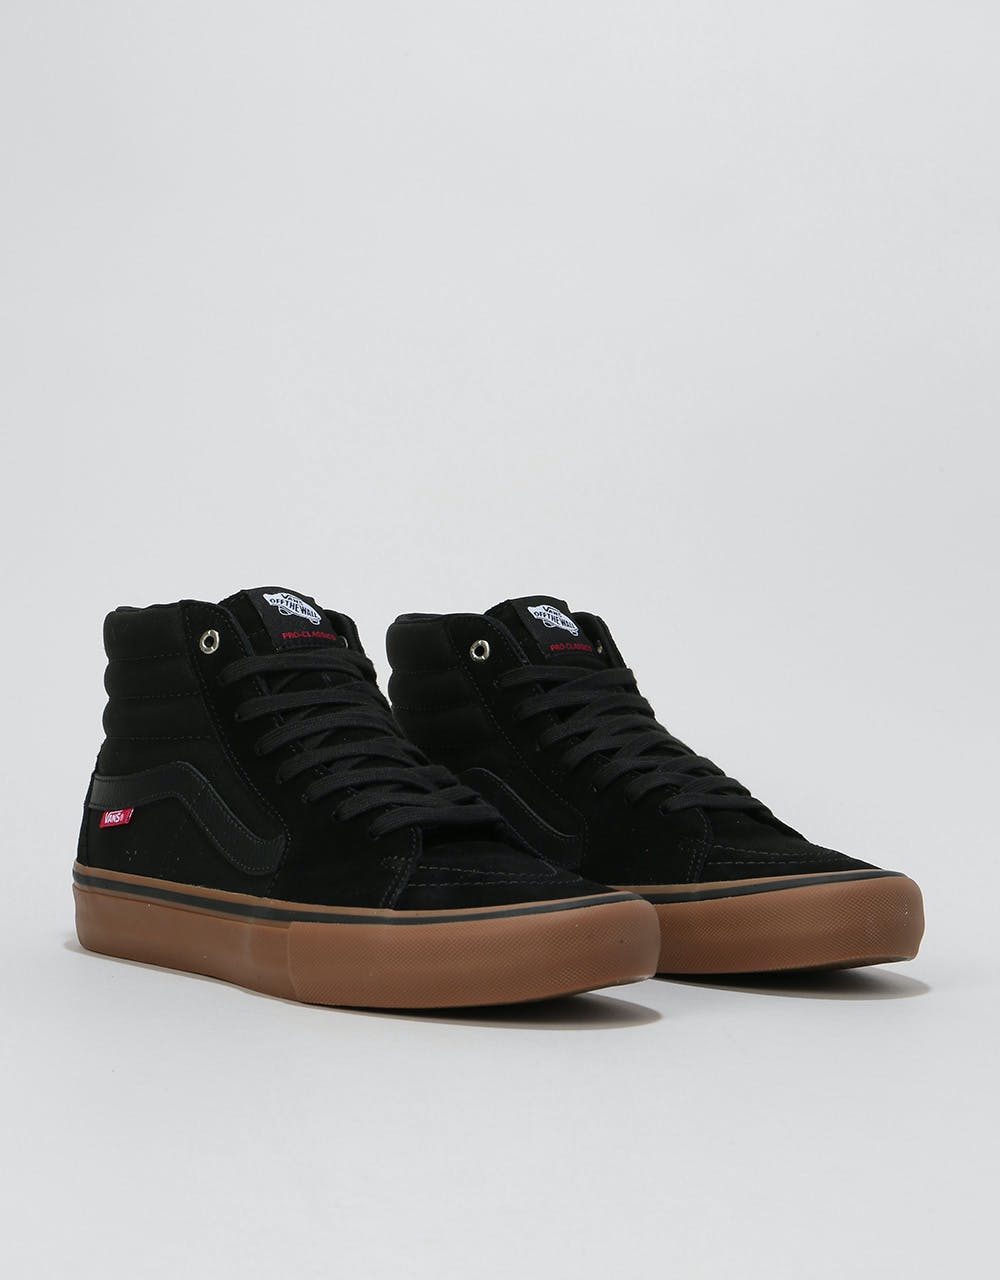 Vans Sk8-Hi Pro Skate Shoes - Black/Gum